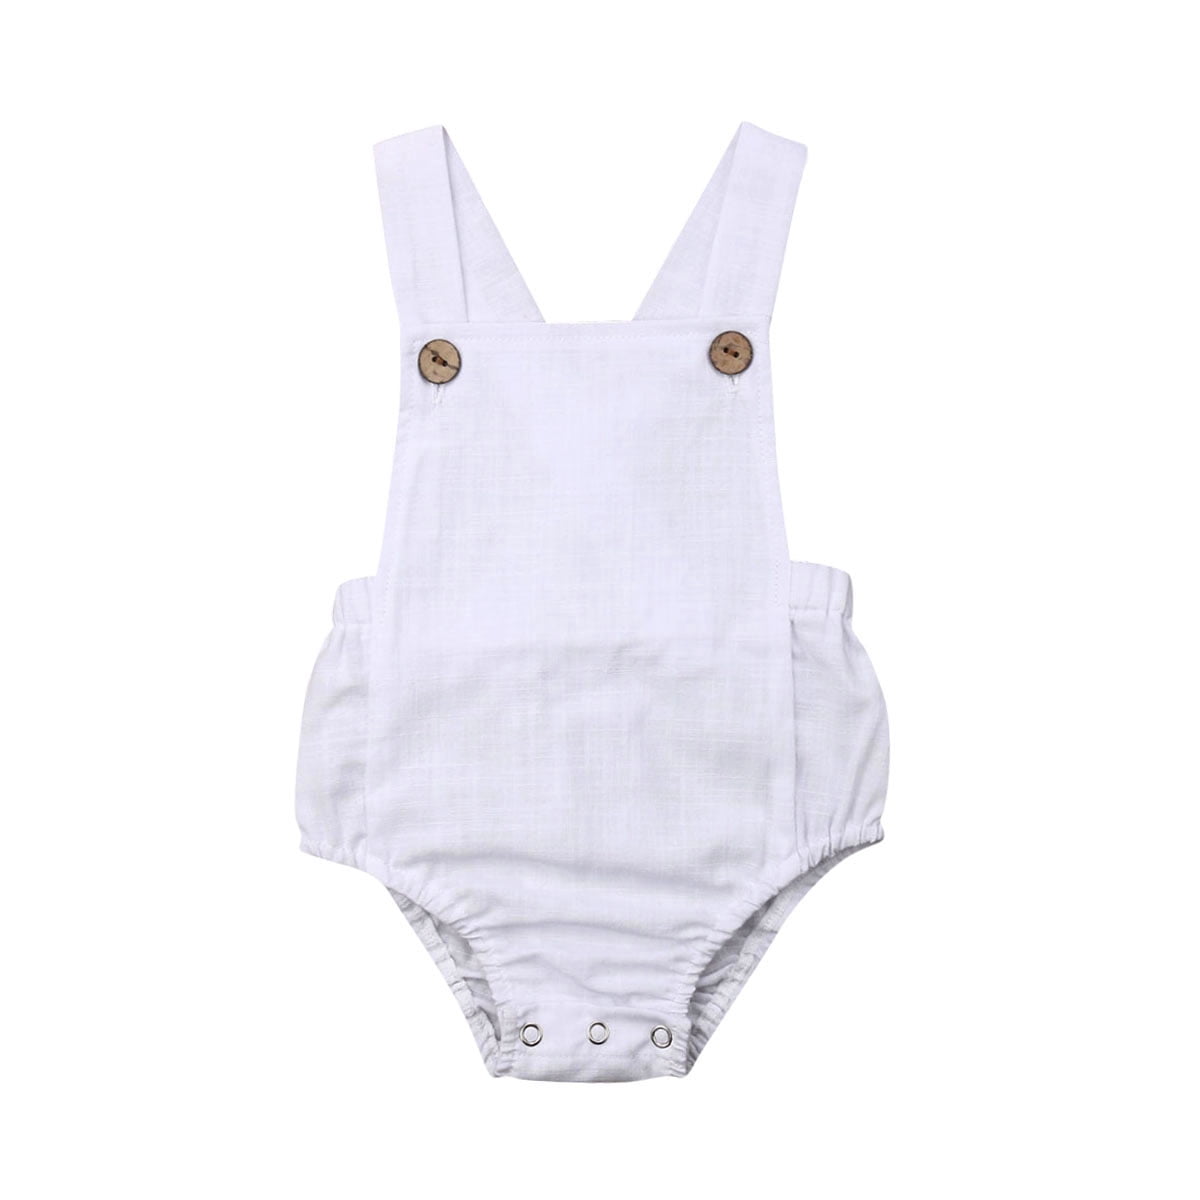 Newborn Baby Boy Girl Cotton Bodysuit Infant Romper Jumpsuit Clothes Outfits Set 